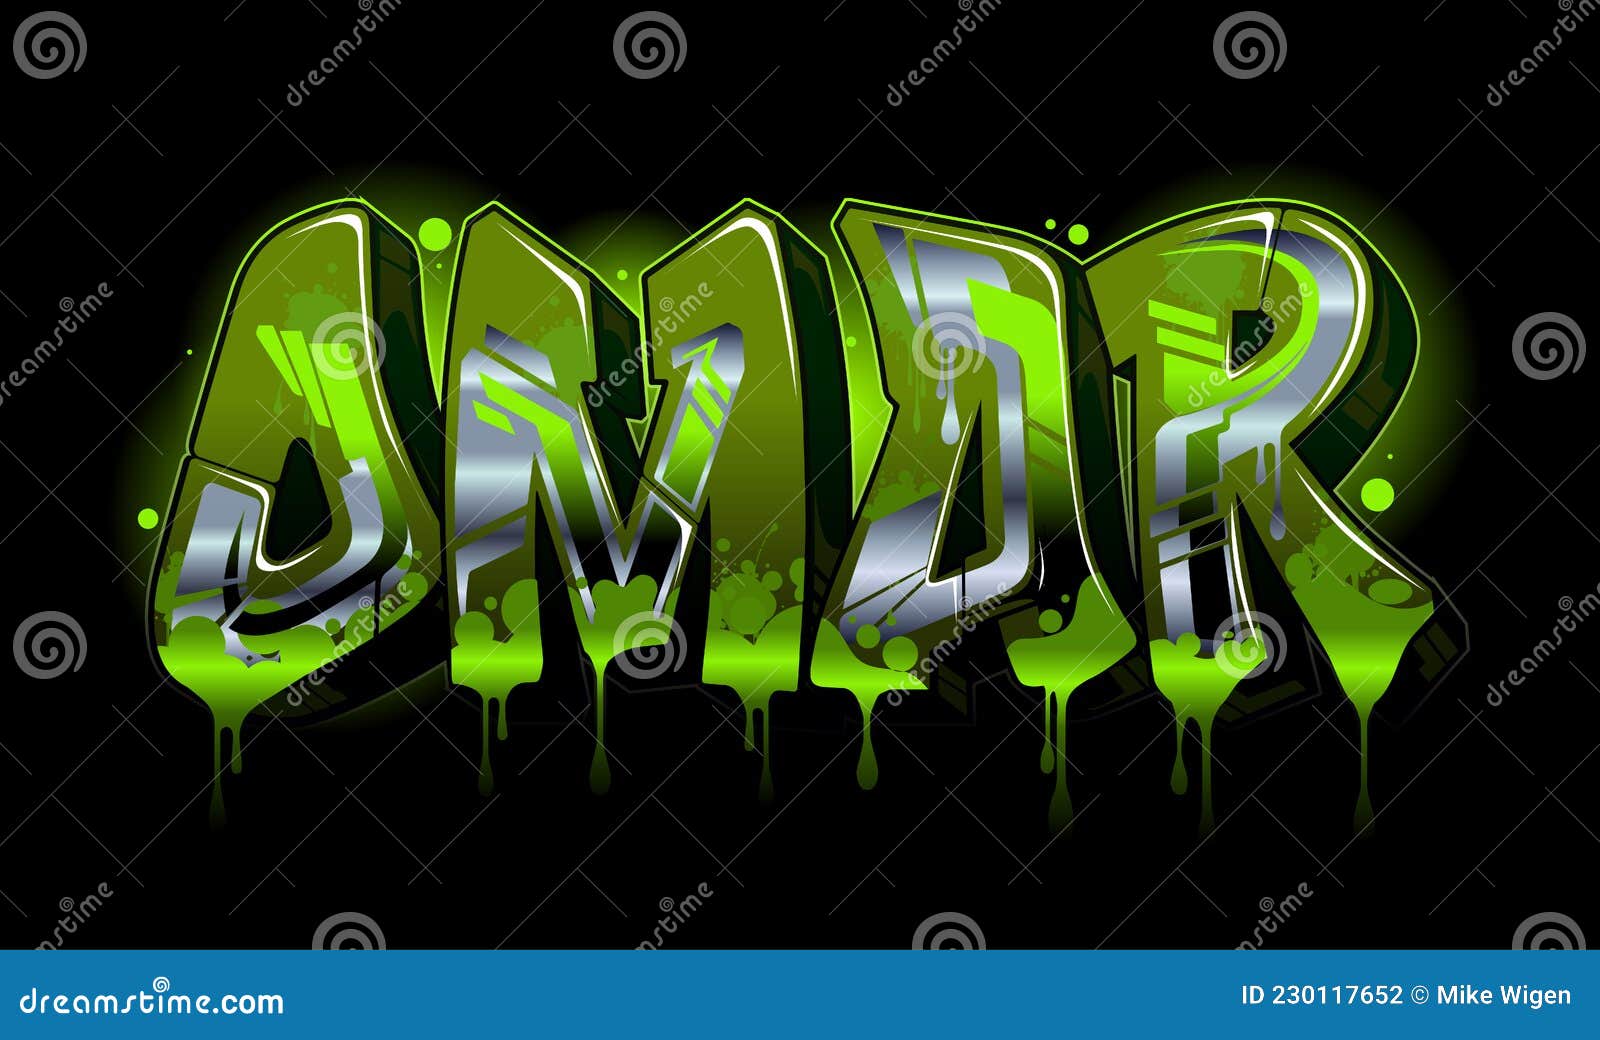 graffiti styled name  - omar